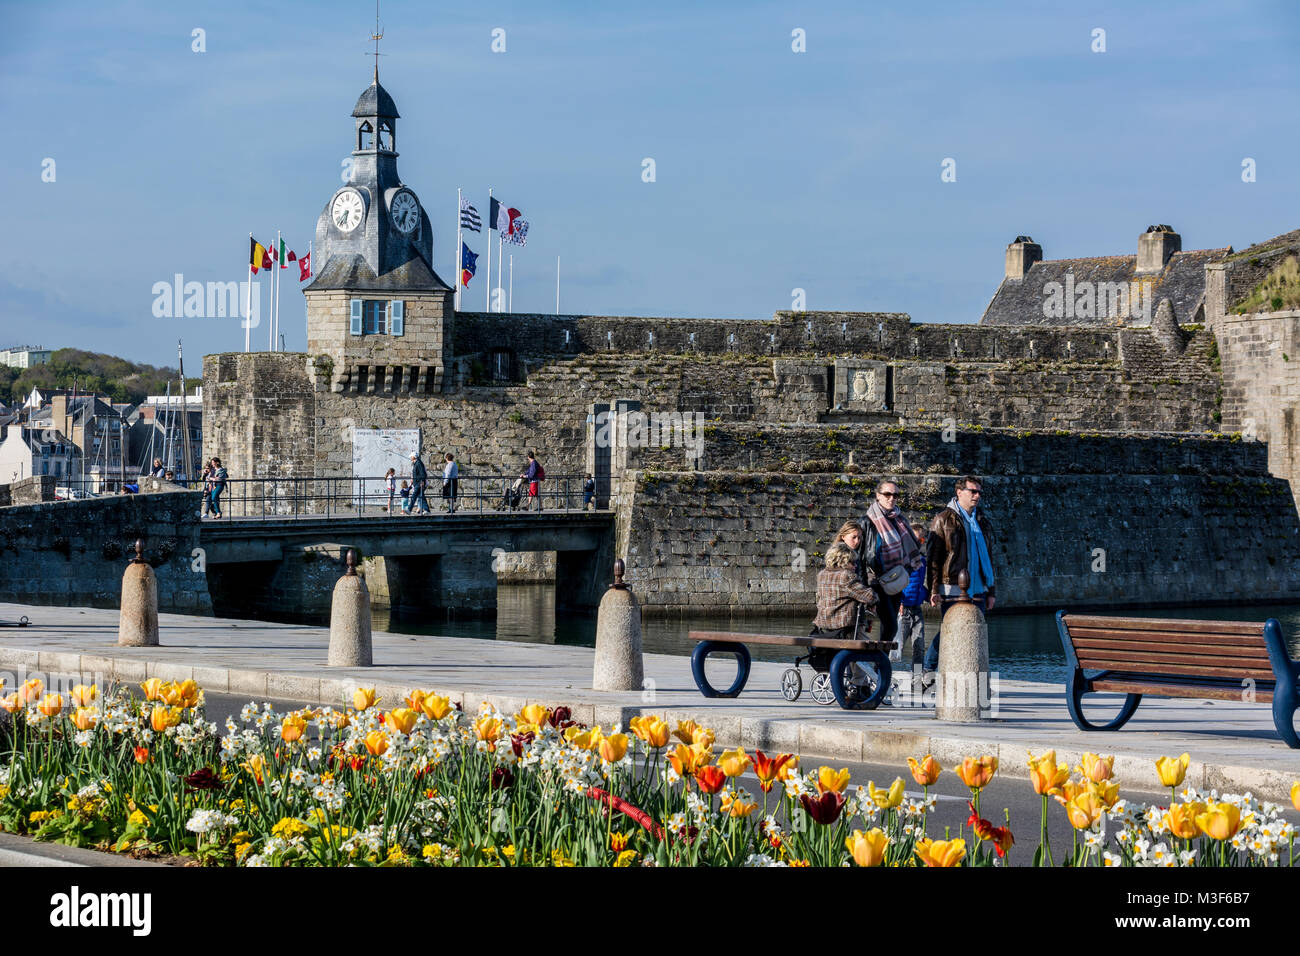 Die Altstadt - Ville vicino - von Concarneau in der Bretagne, Finistère, Frankreich, mit Promenade am Hafenbecken Foto Stock